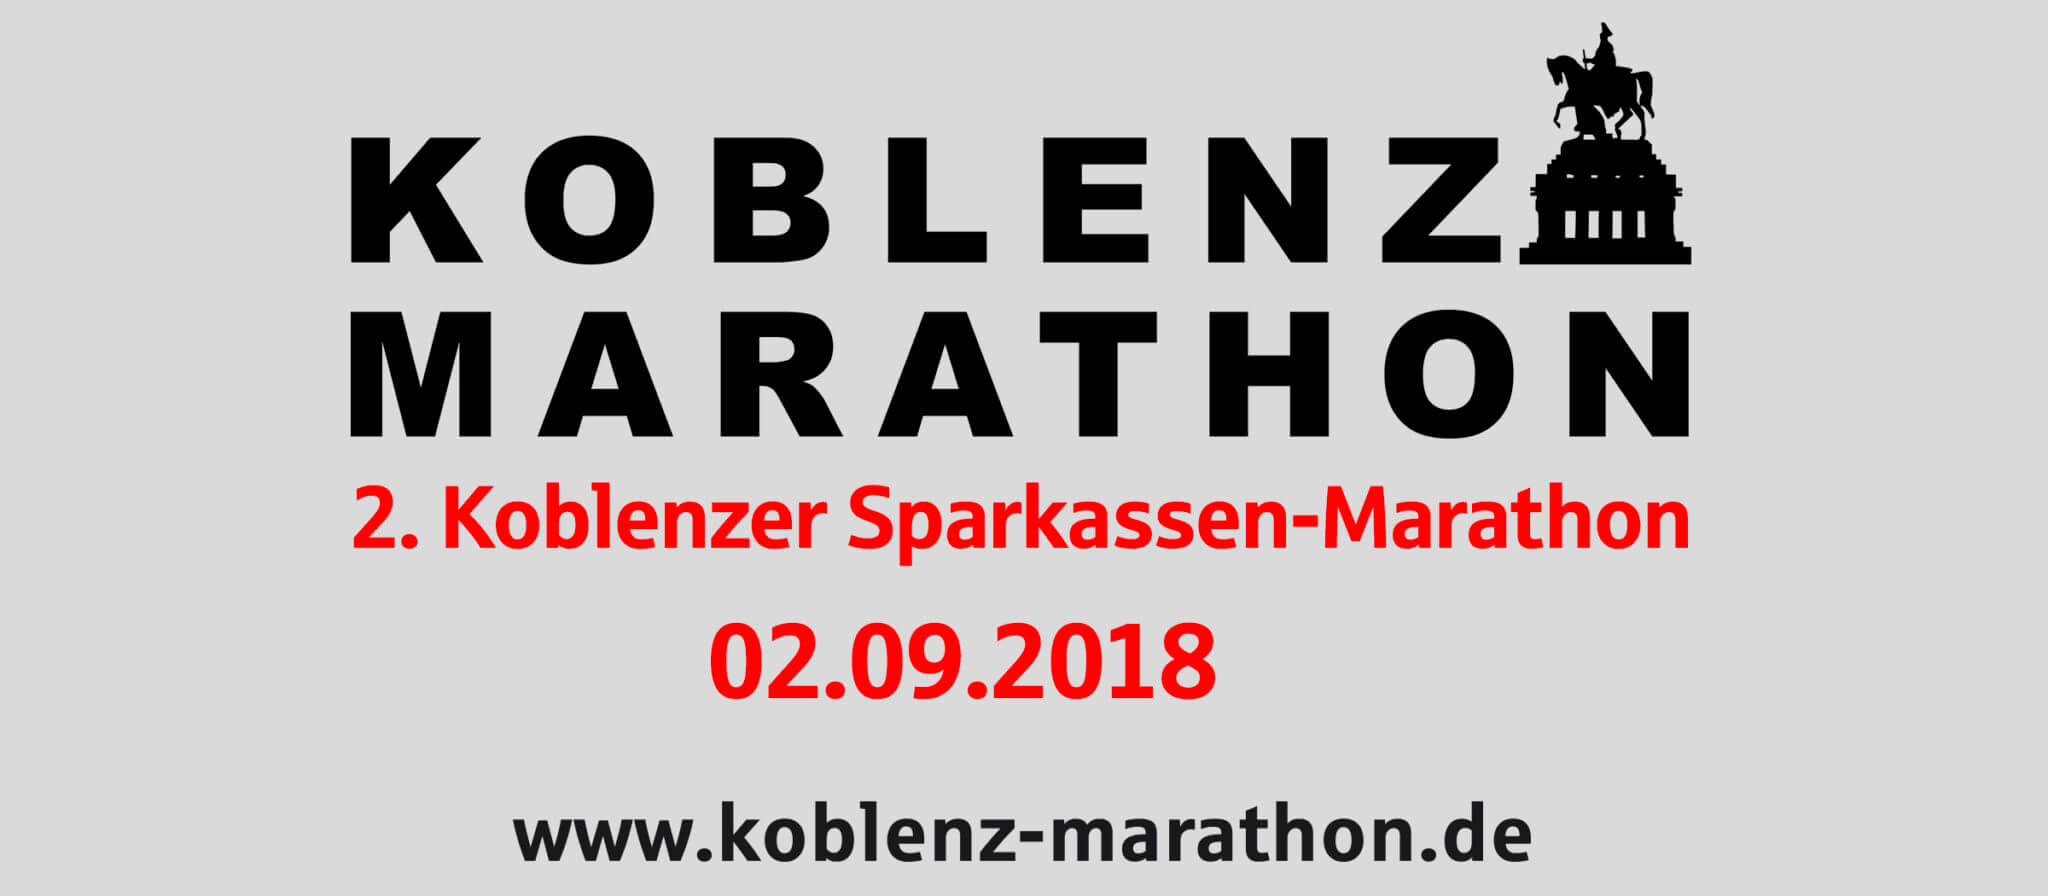 Logo Koblenzer Sparkassen-Marathon